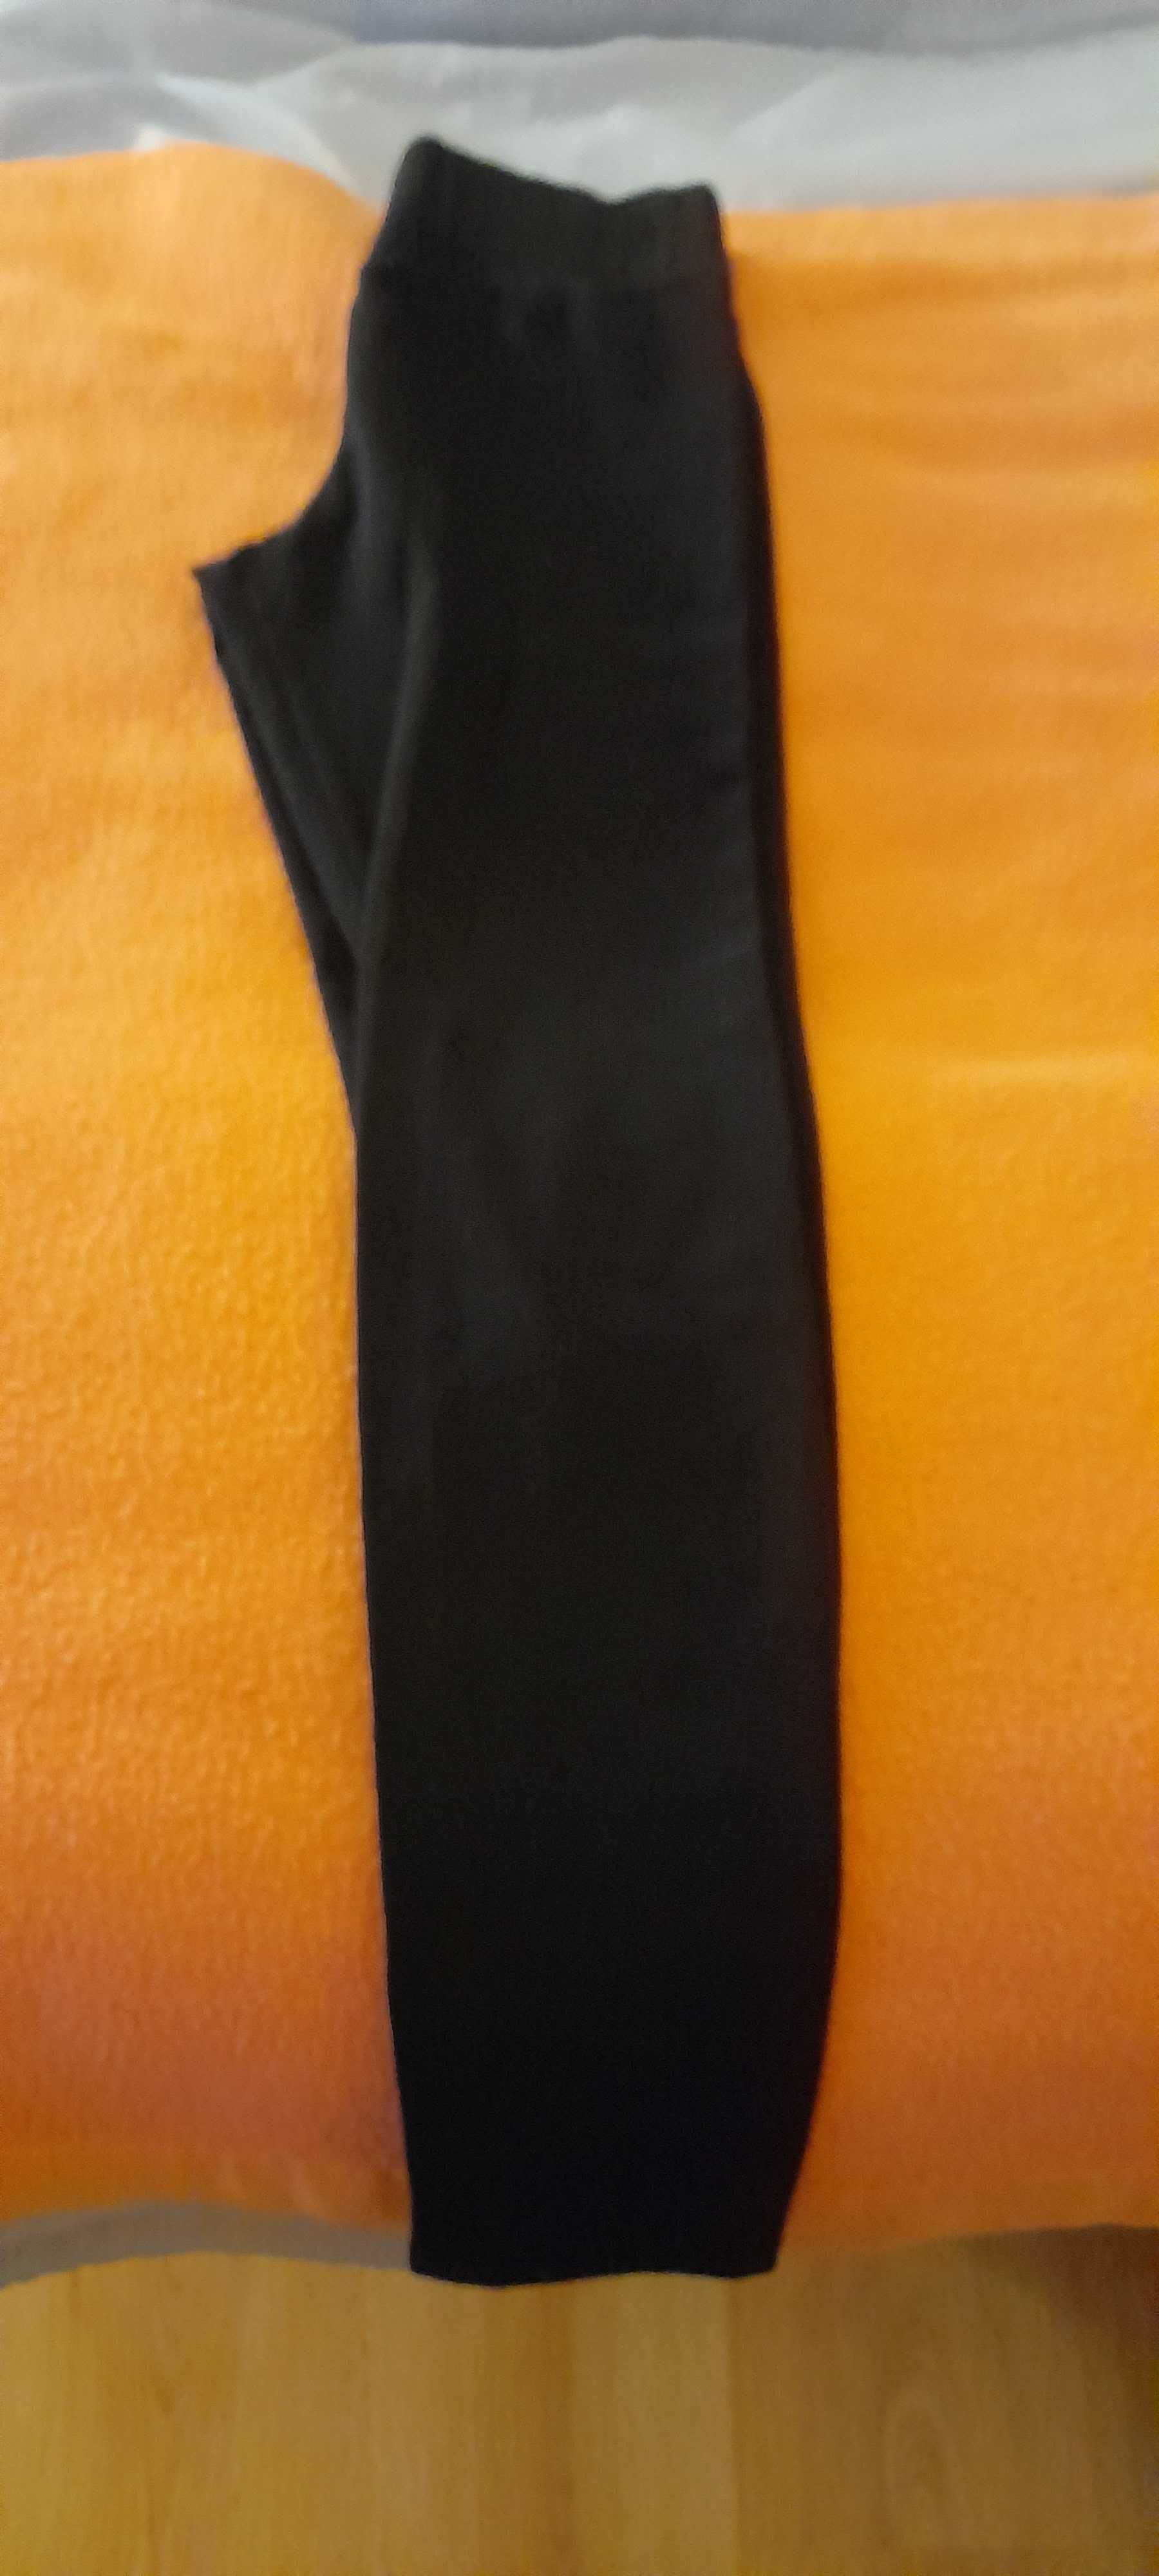 Leggings calzedonia cor preta, tamanho M, nova, vendo por 7,50€